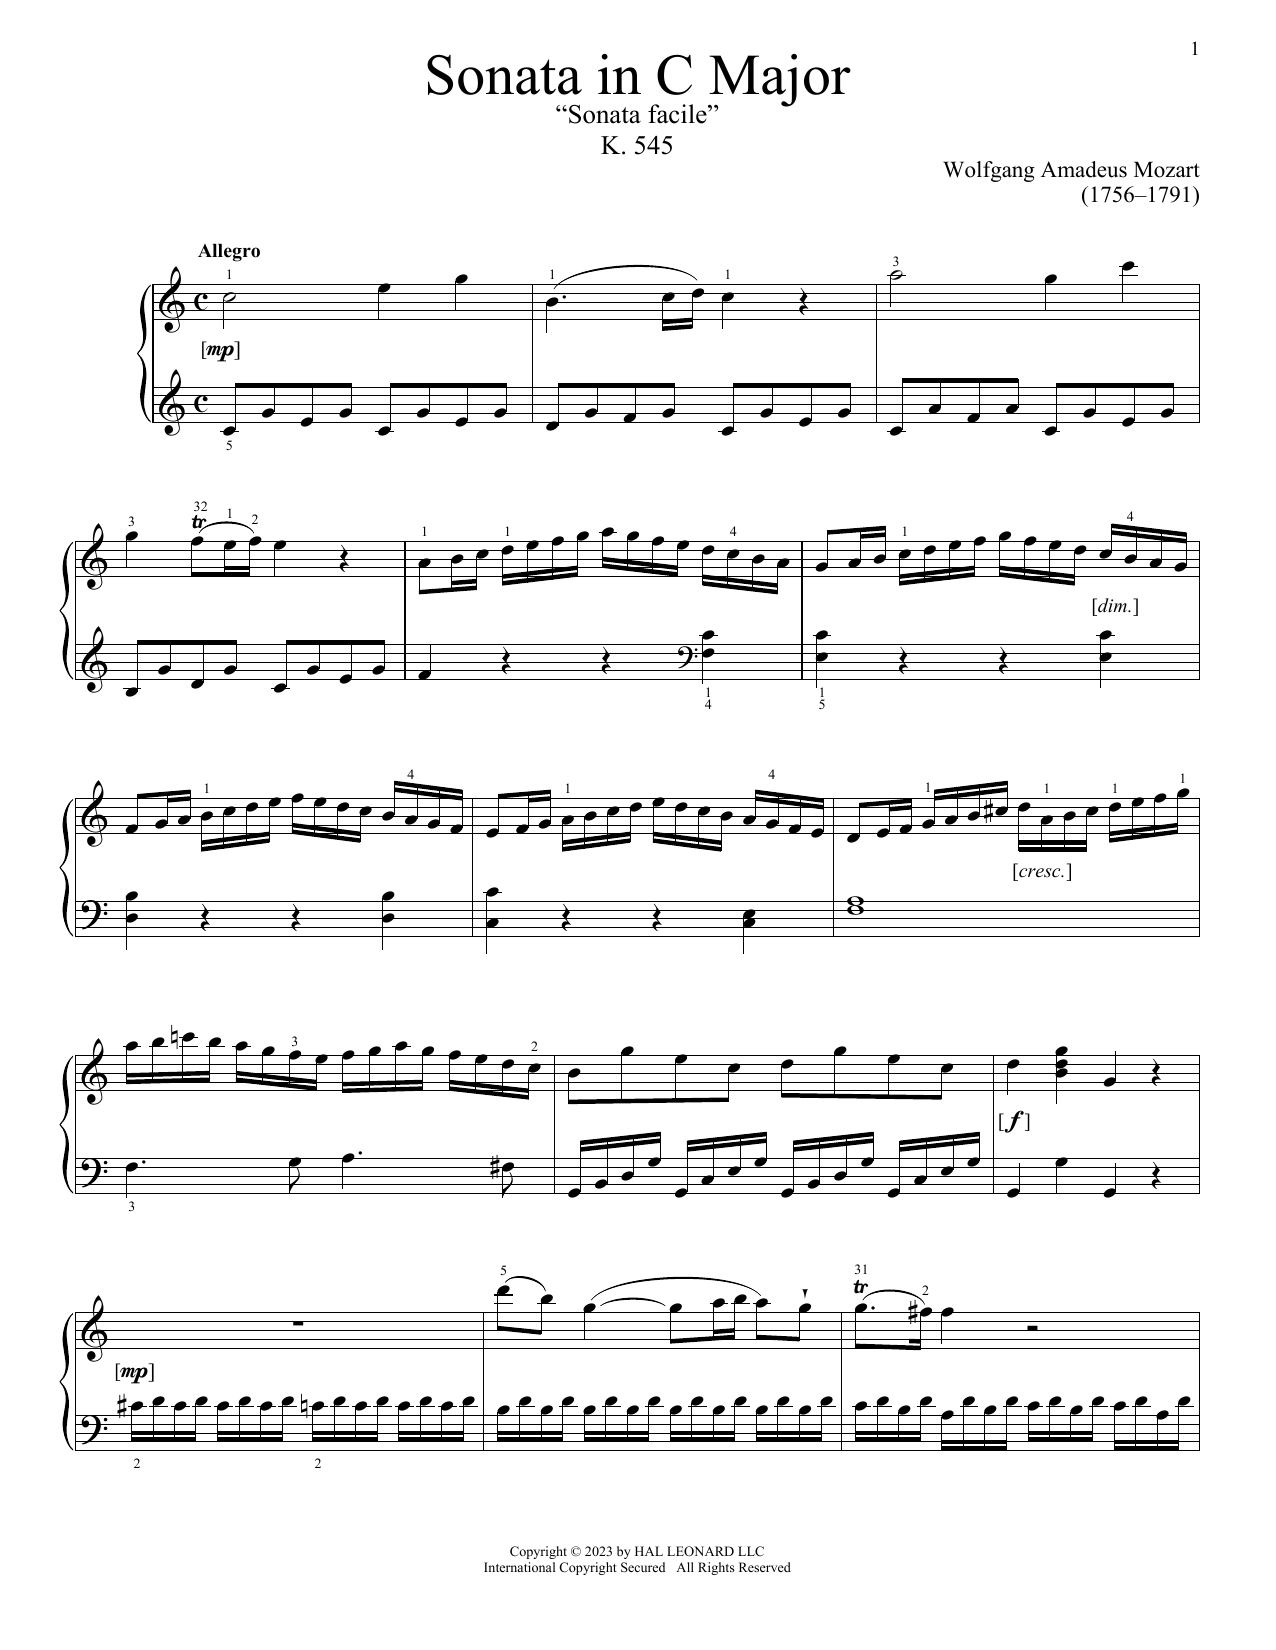 Download Wolfgang Amadeus Mozart Sonata In C Major, K. 545 Sheet Music